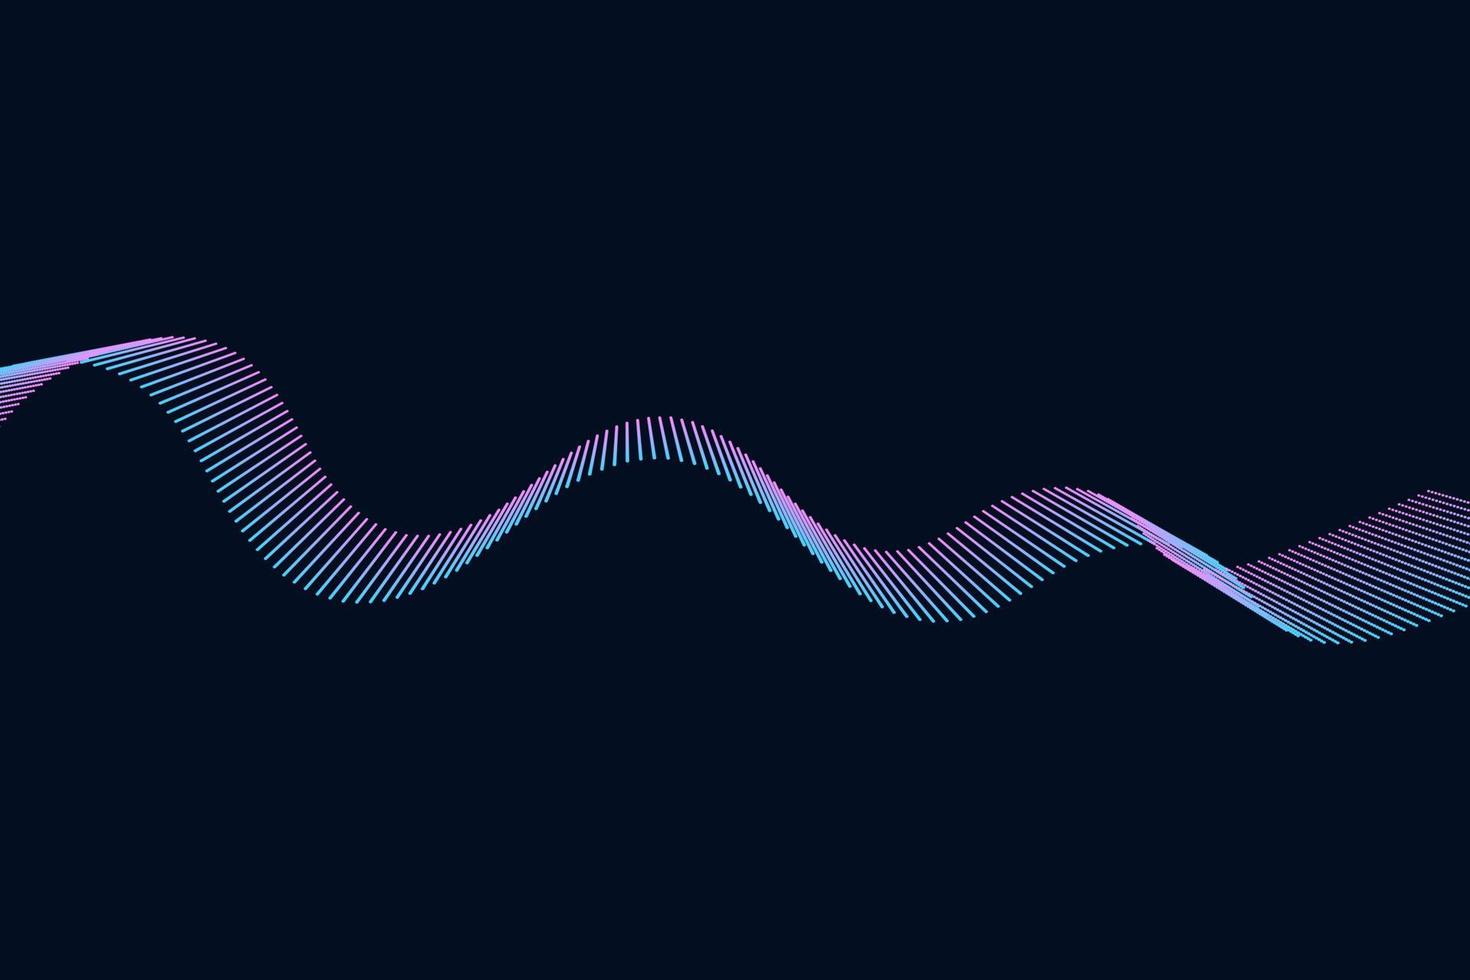 ilustración de ondas de sonido en un fondo oscuro. indicadores de ecualizador digital azul abstracto. vector